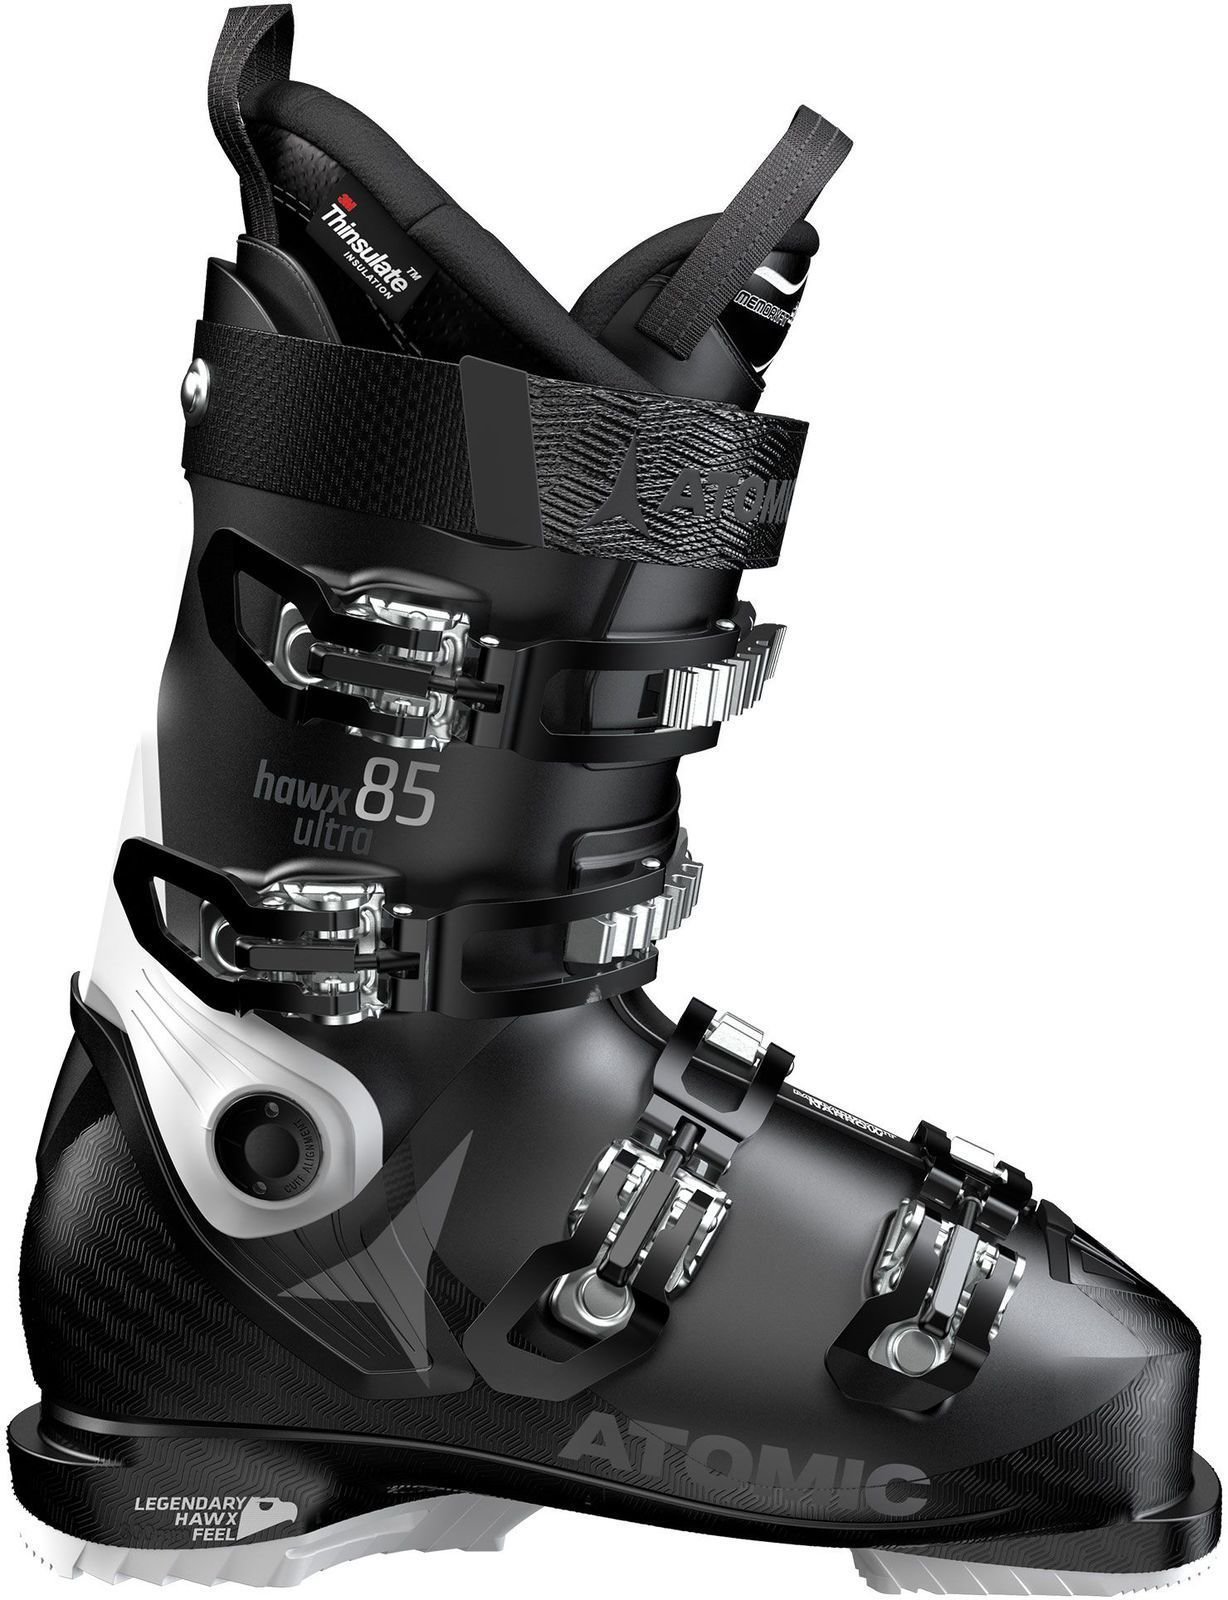 Chaussures de ski alpin Atomic Hawx Ultra W Noir-Blanc 25/25,5 Chaussures de ski alpin